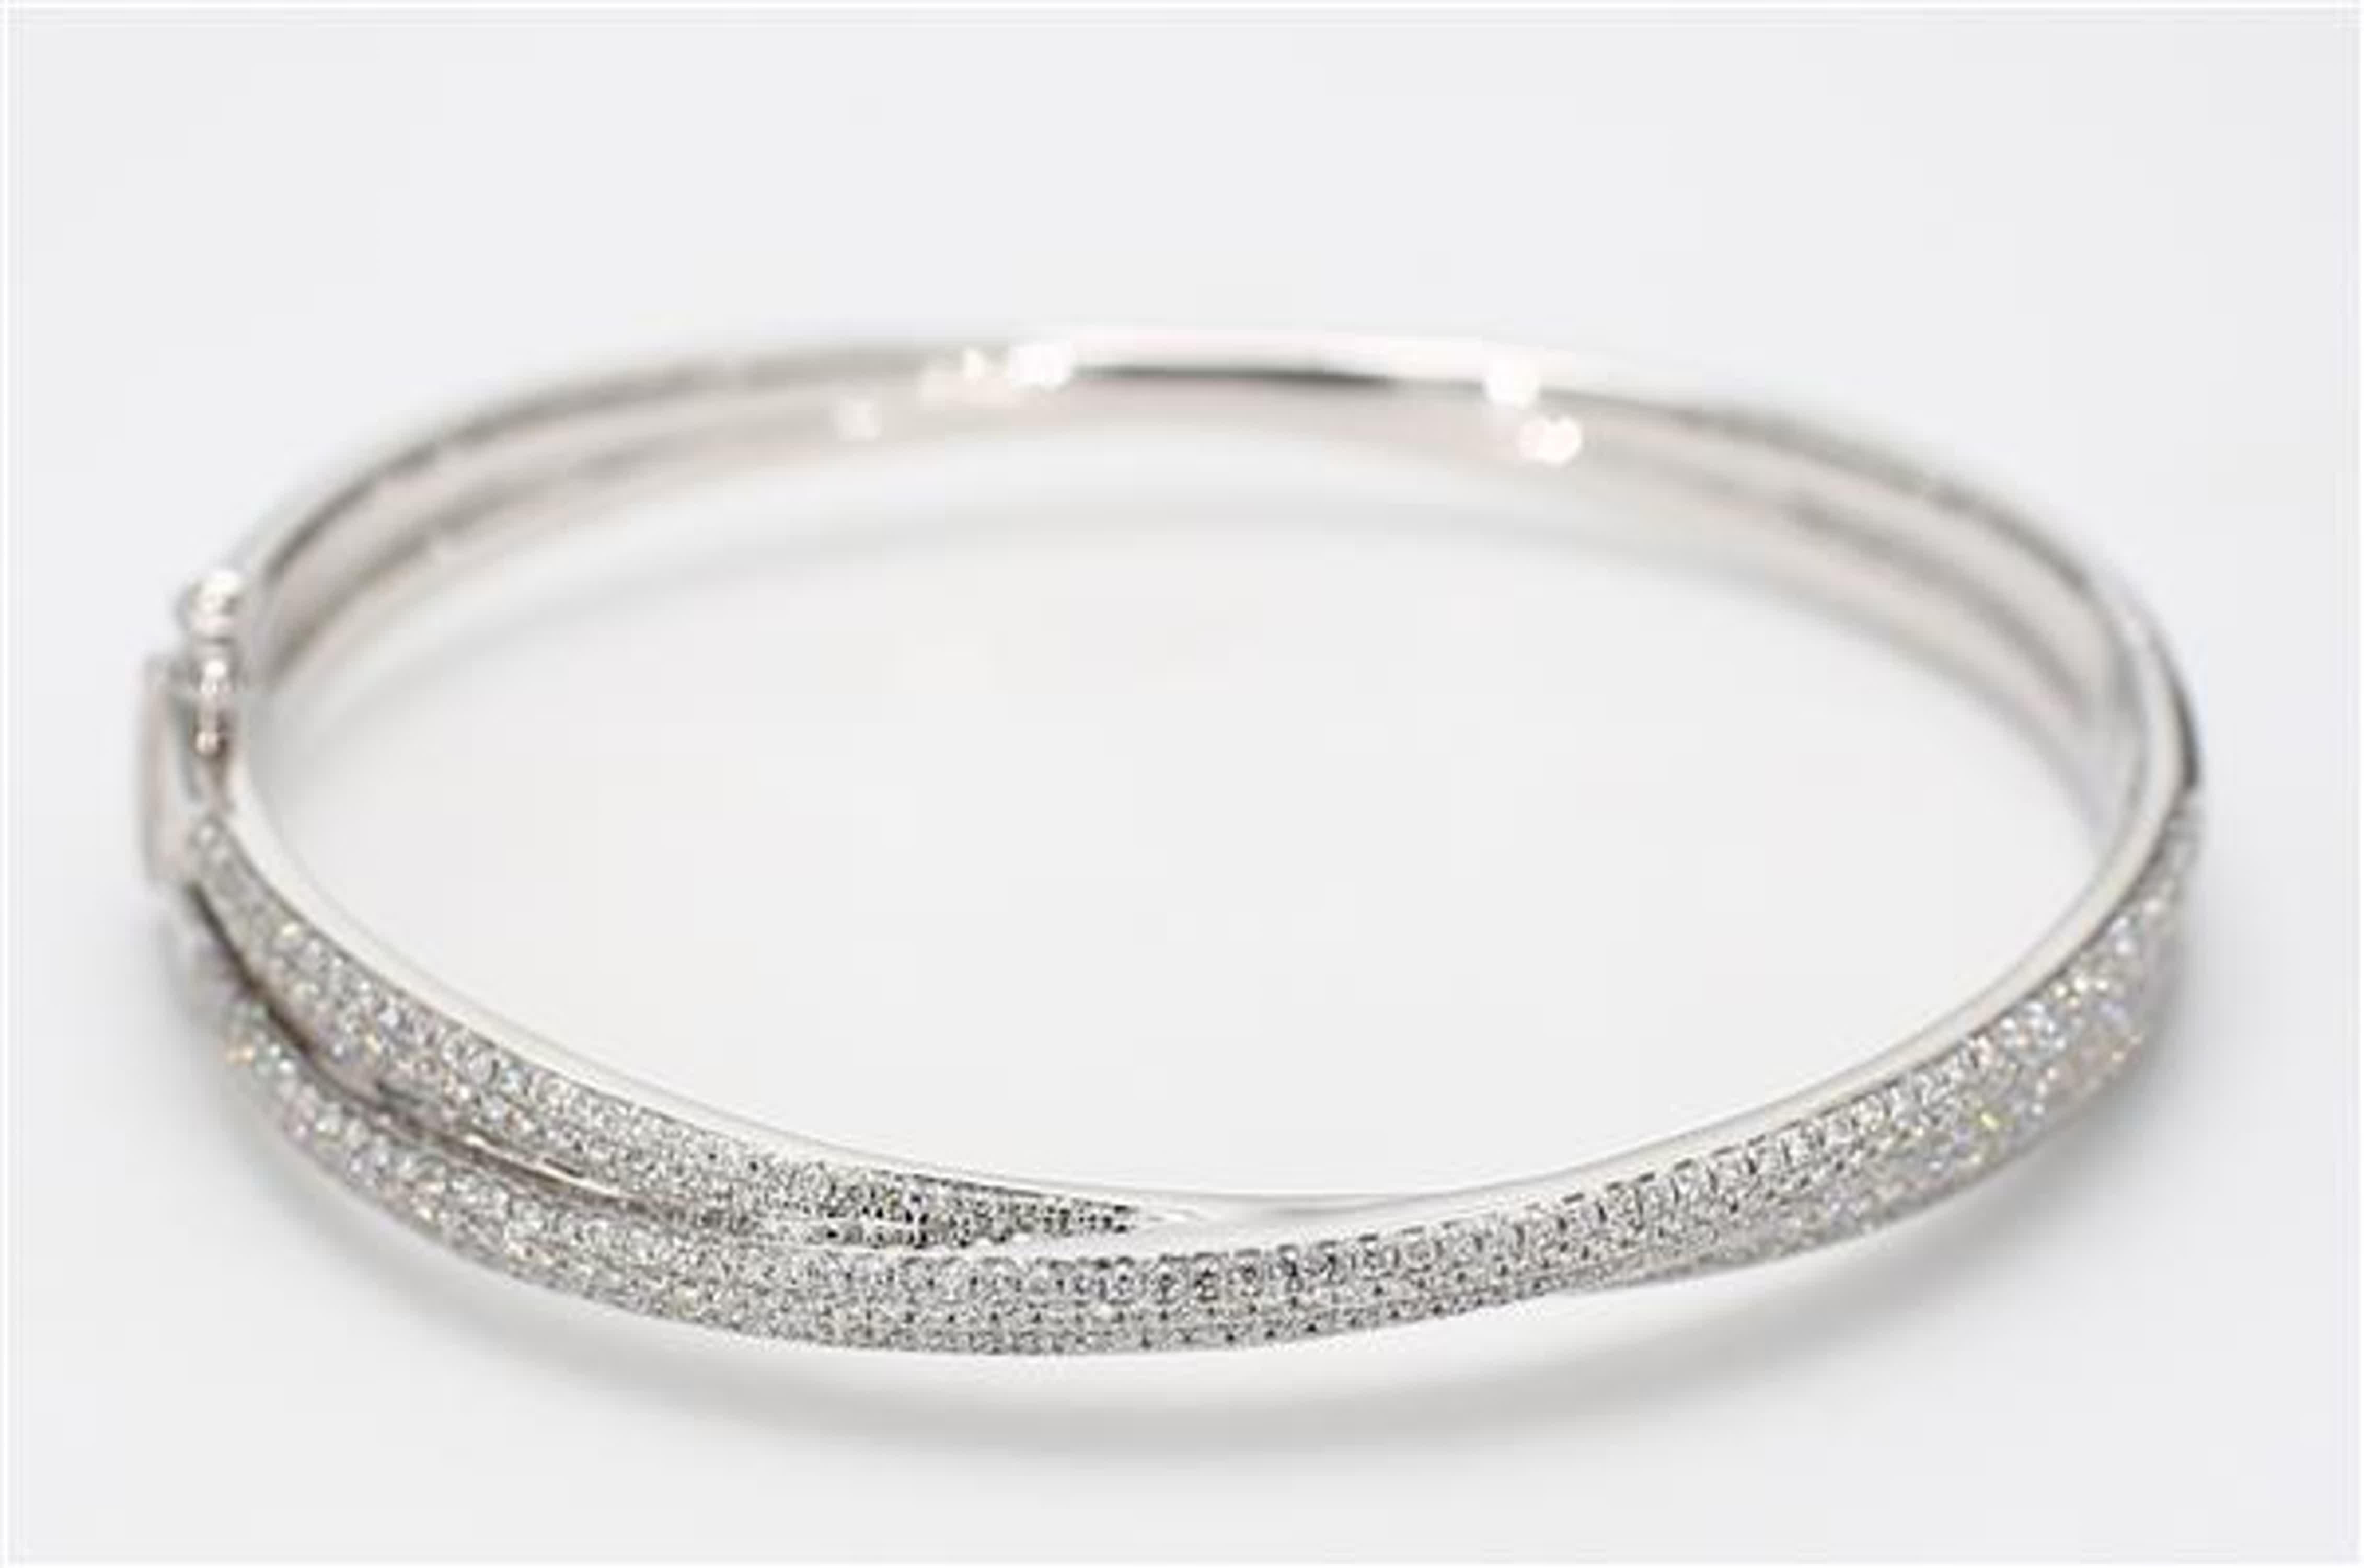 Le bracelet classique en diamants de Raregemworld. Monté dans une belle monture en or blanc 18 carats avec des diamants ronds blancs naturels en méli-mélo. Ce bracelet est garanti pour impressionner et enrichir votre collection personnelle.

Poids